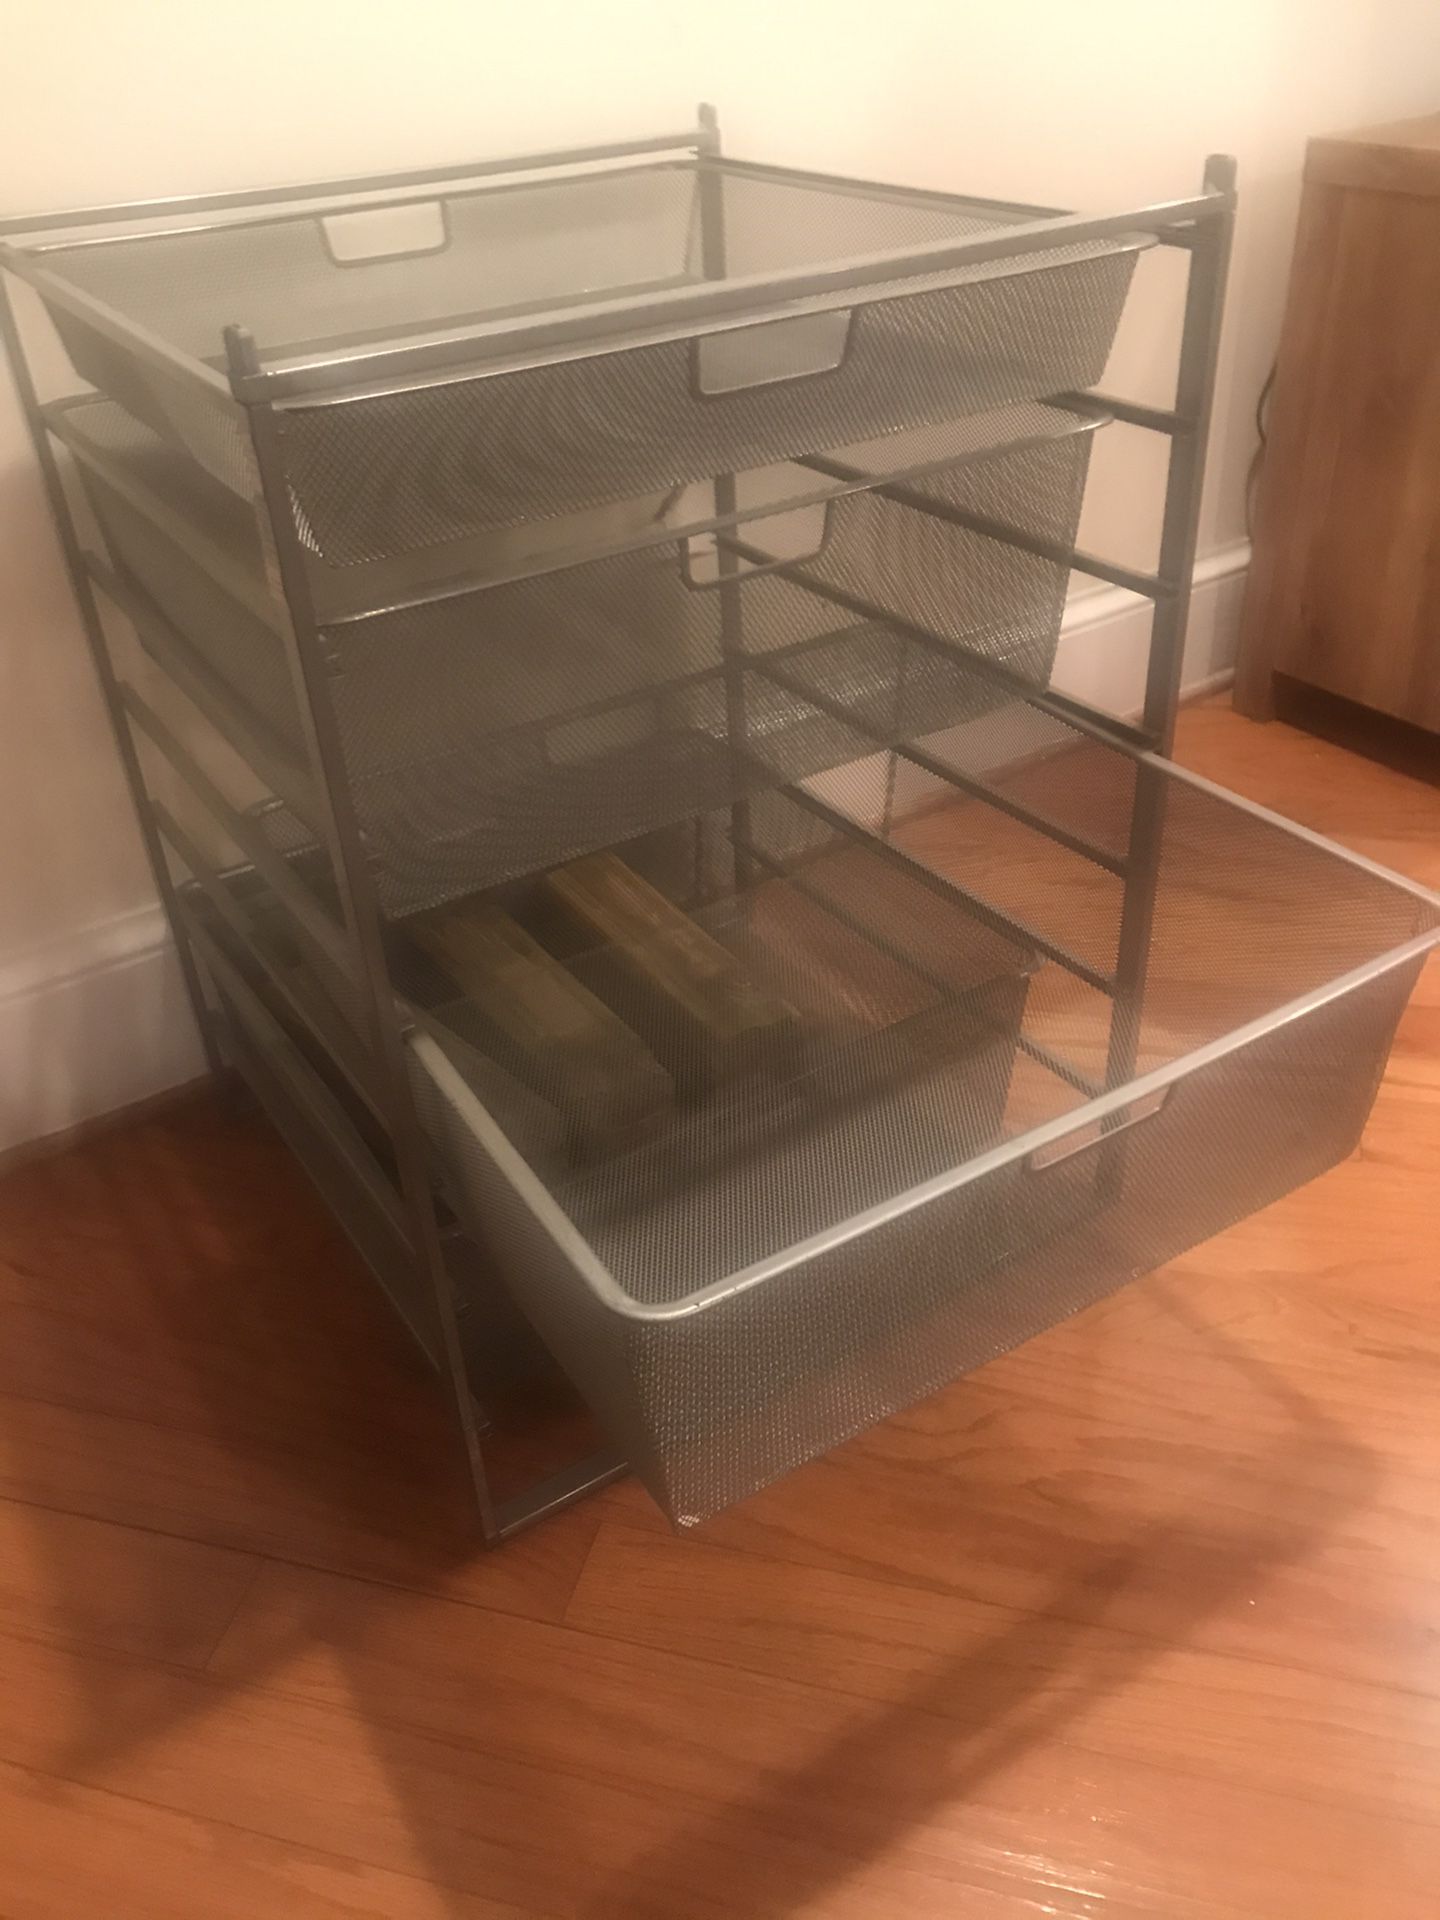 Modern, metal storage drawers